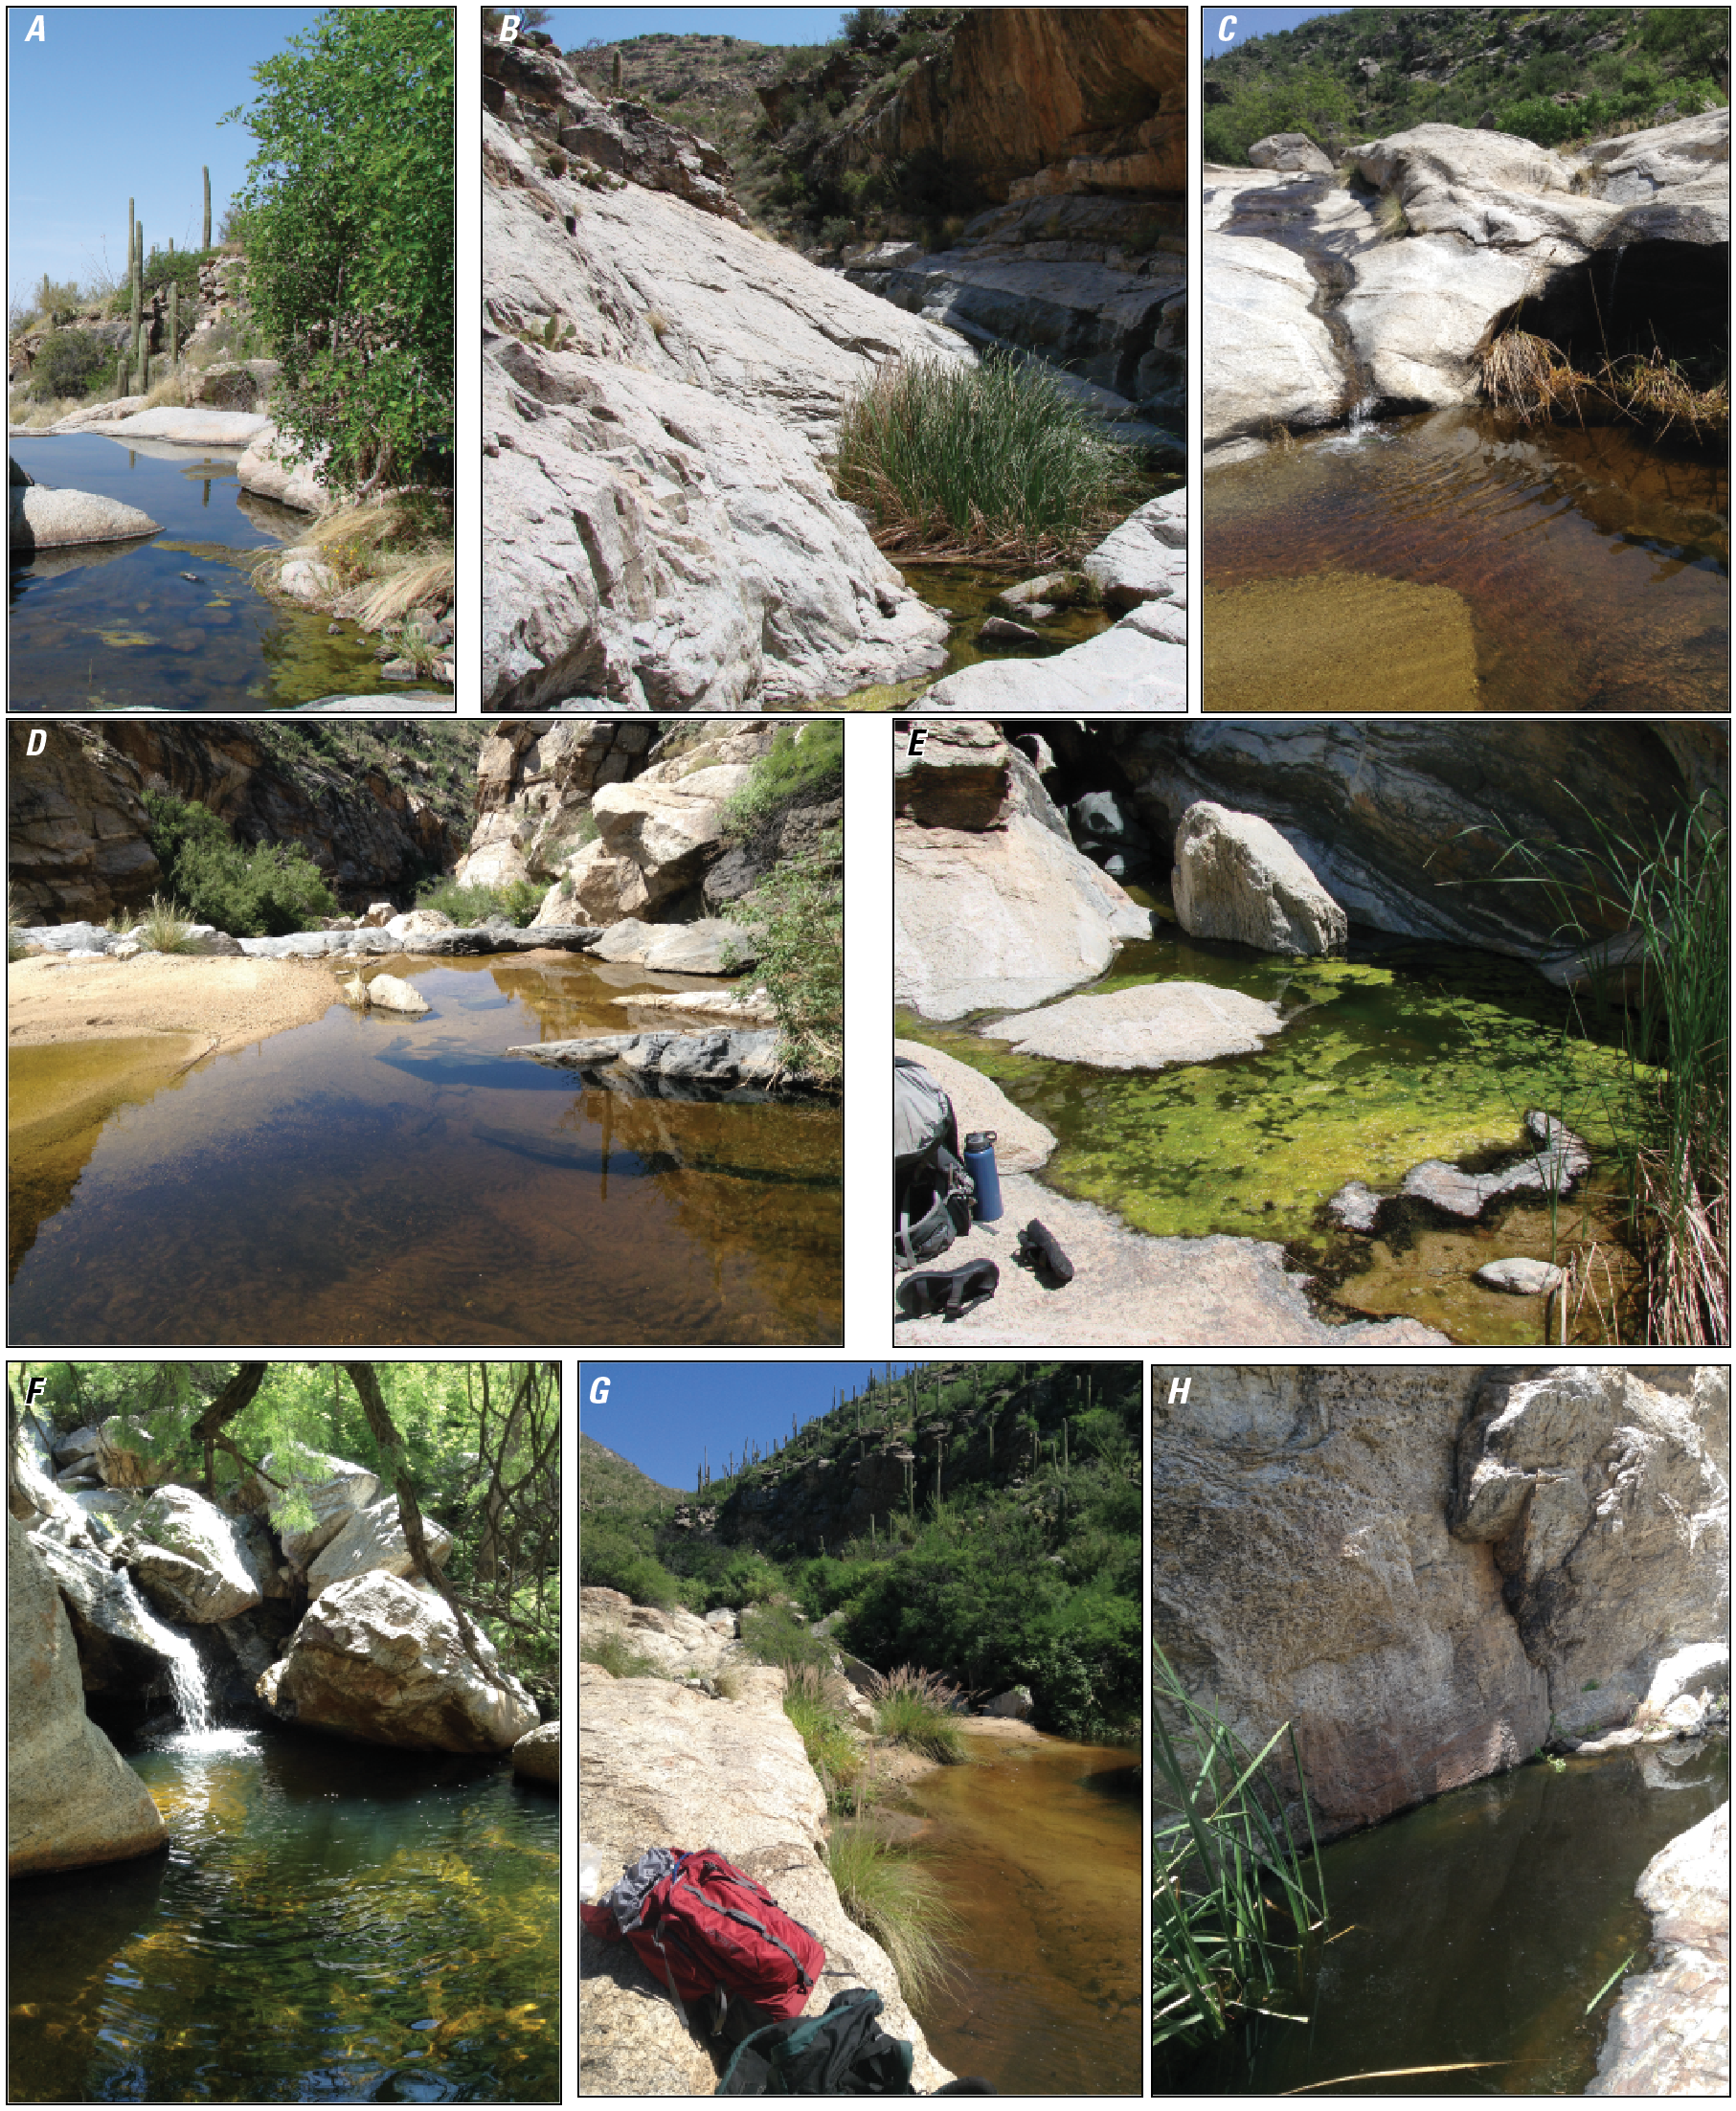 Photographs of Box Canyon pools and sampling locations.